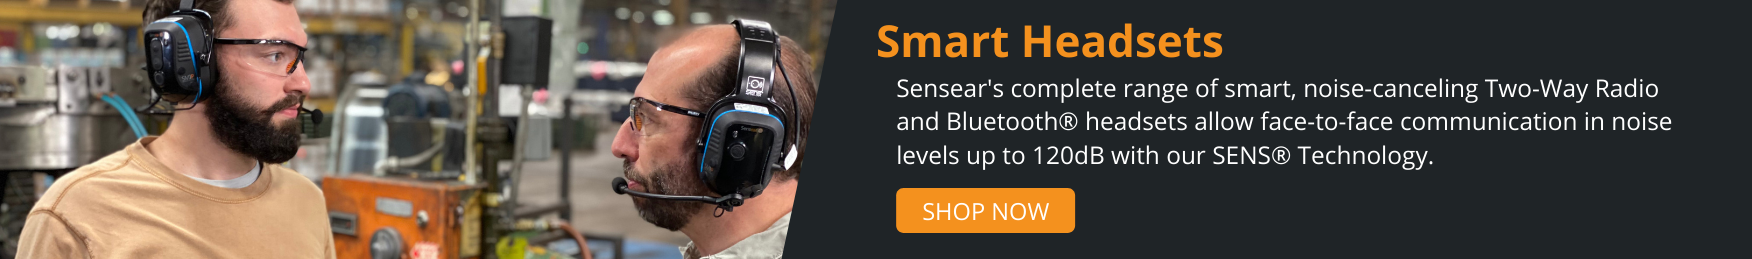 Sensear's Smart Headsets